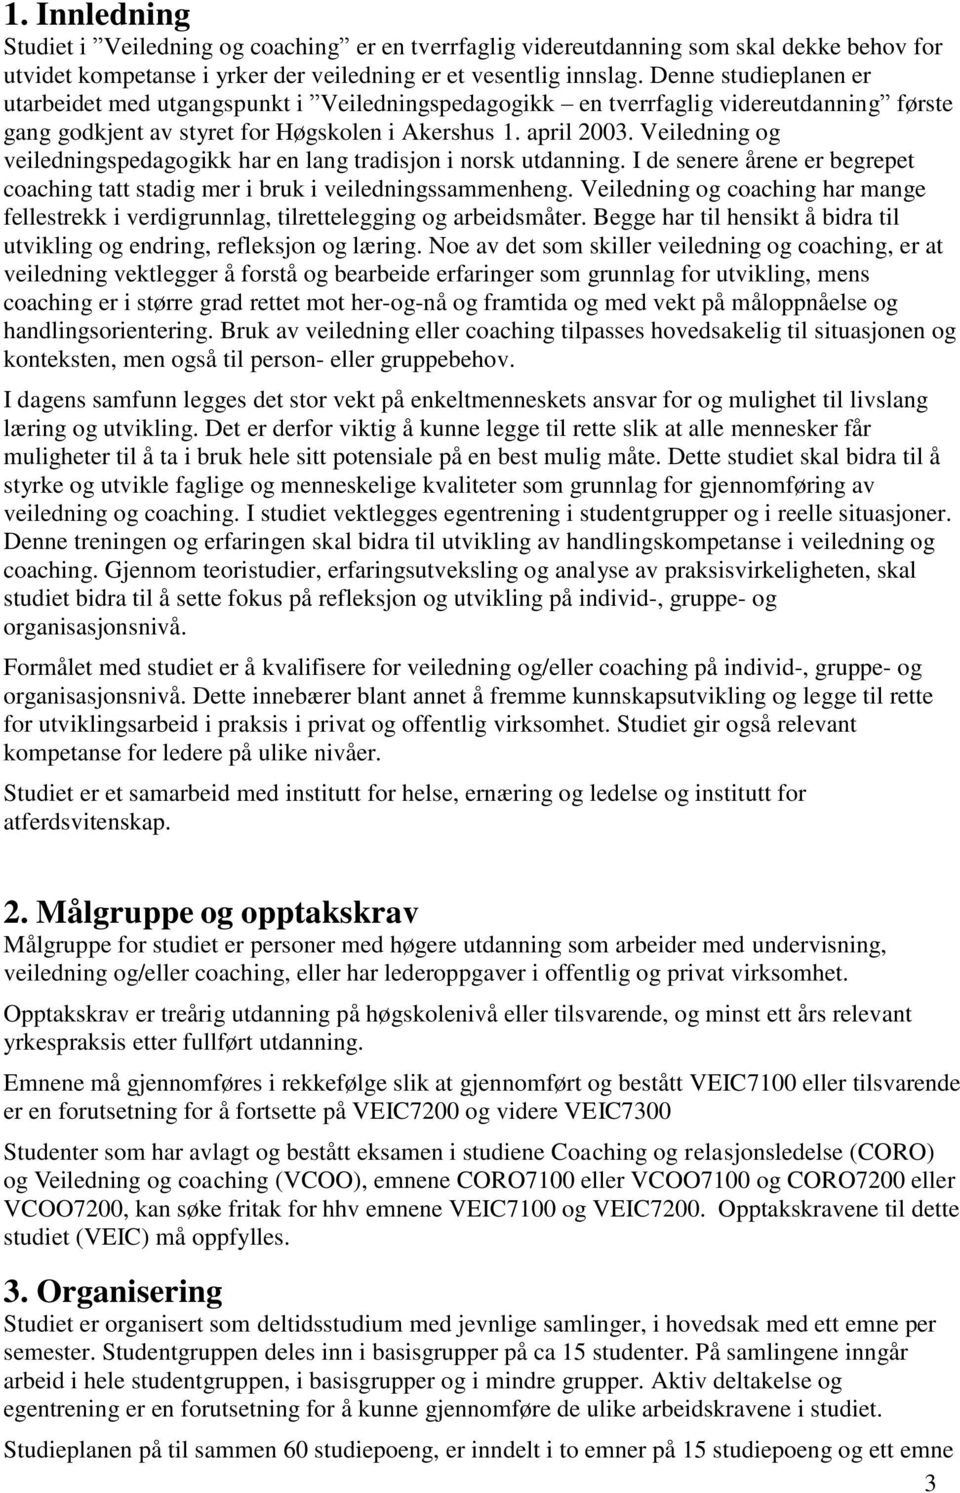 Veiledning og veiledningspedagogikk har en lang tradisjon i norsk utdanning. I de senere årene er begrepet coaching tatt stadig mer i bruk i veiledningssammenheng.